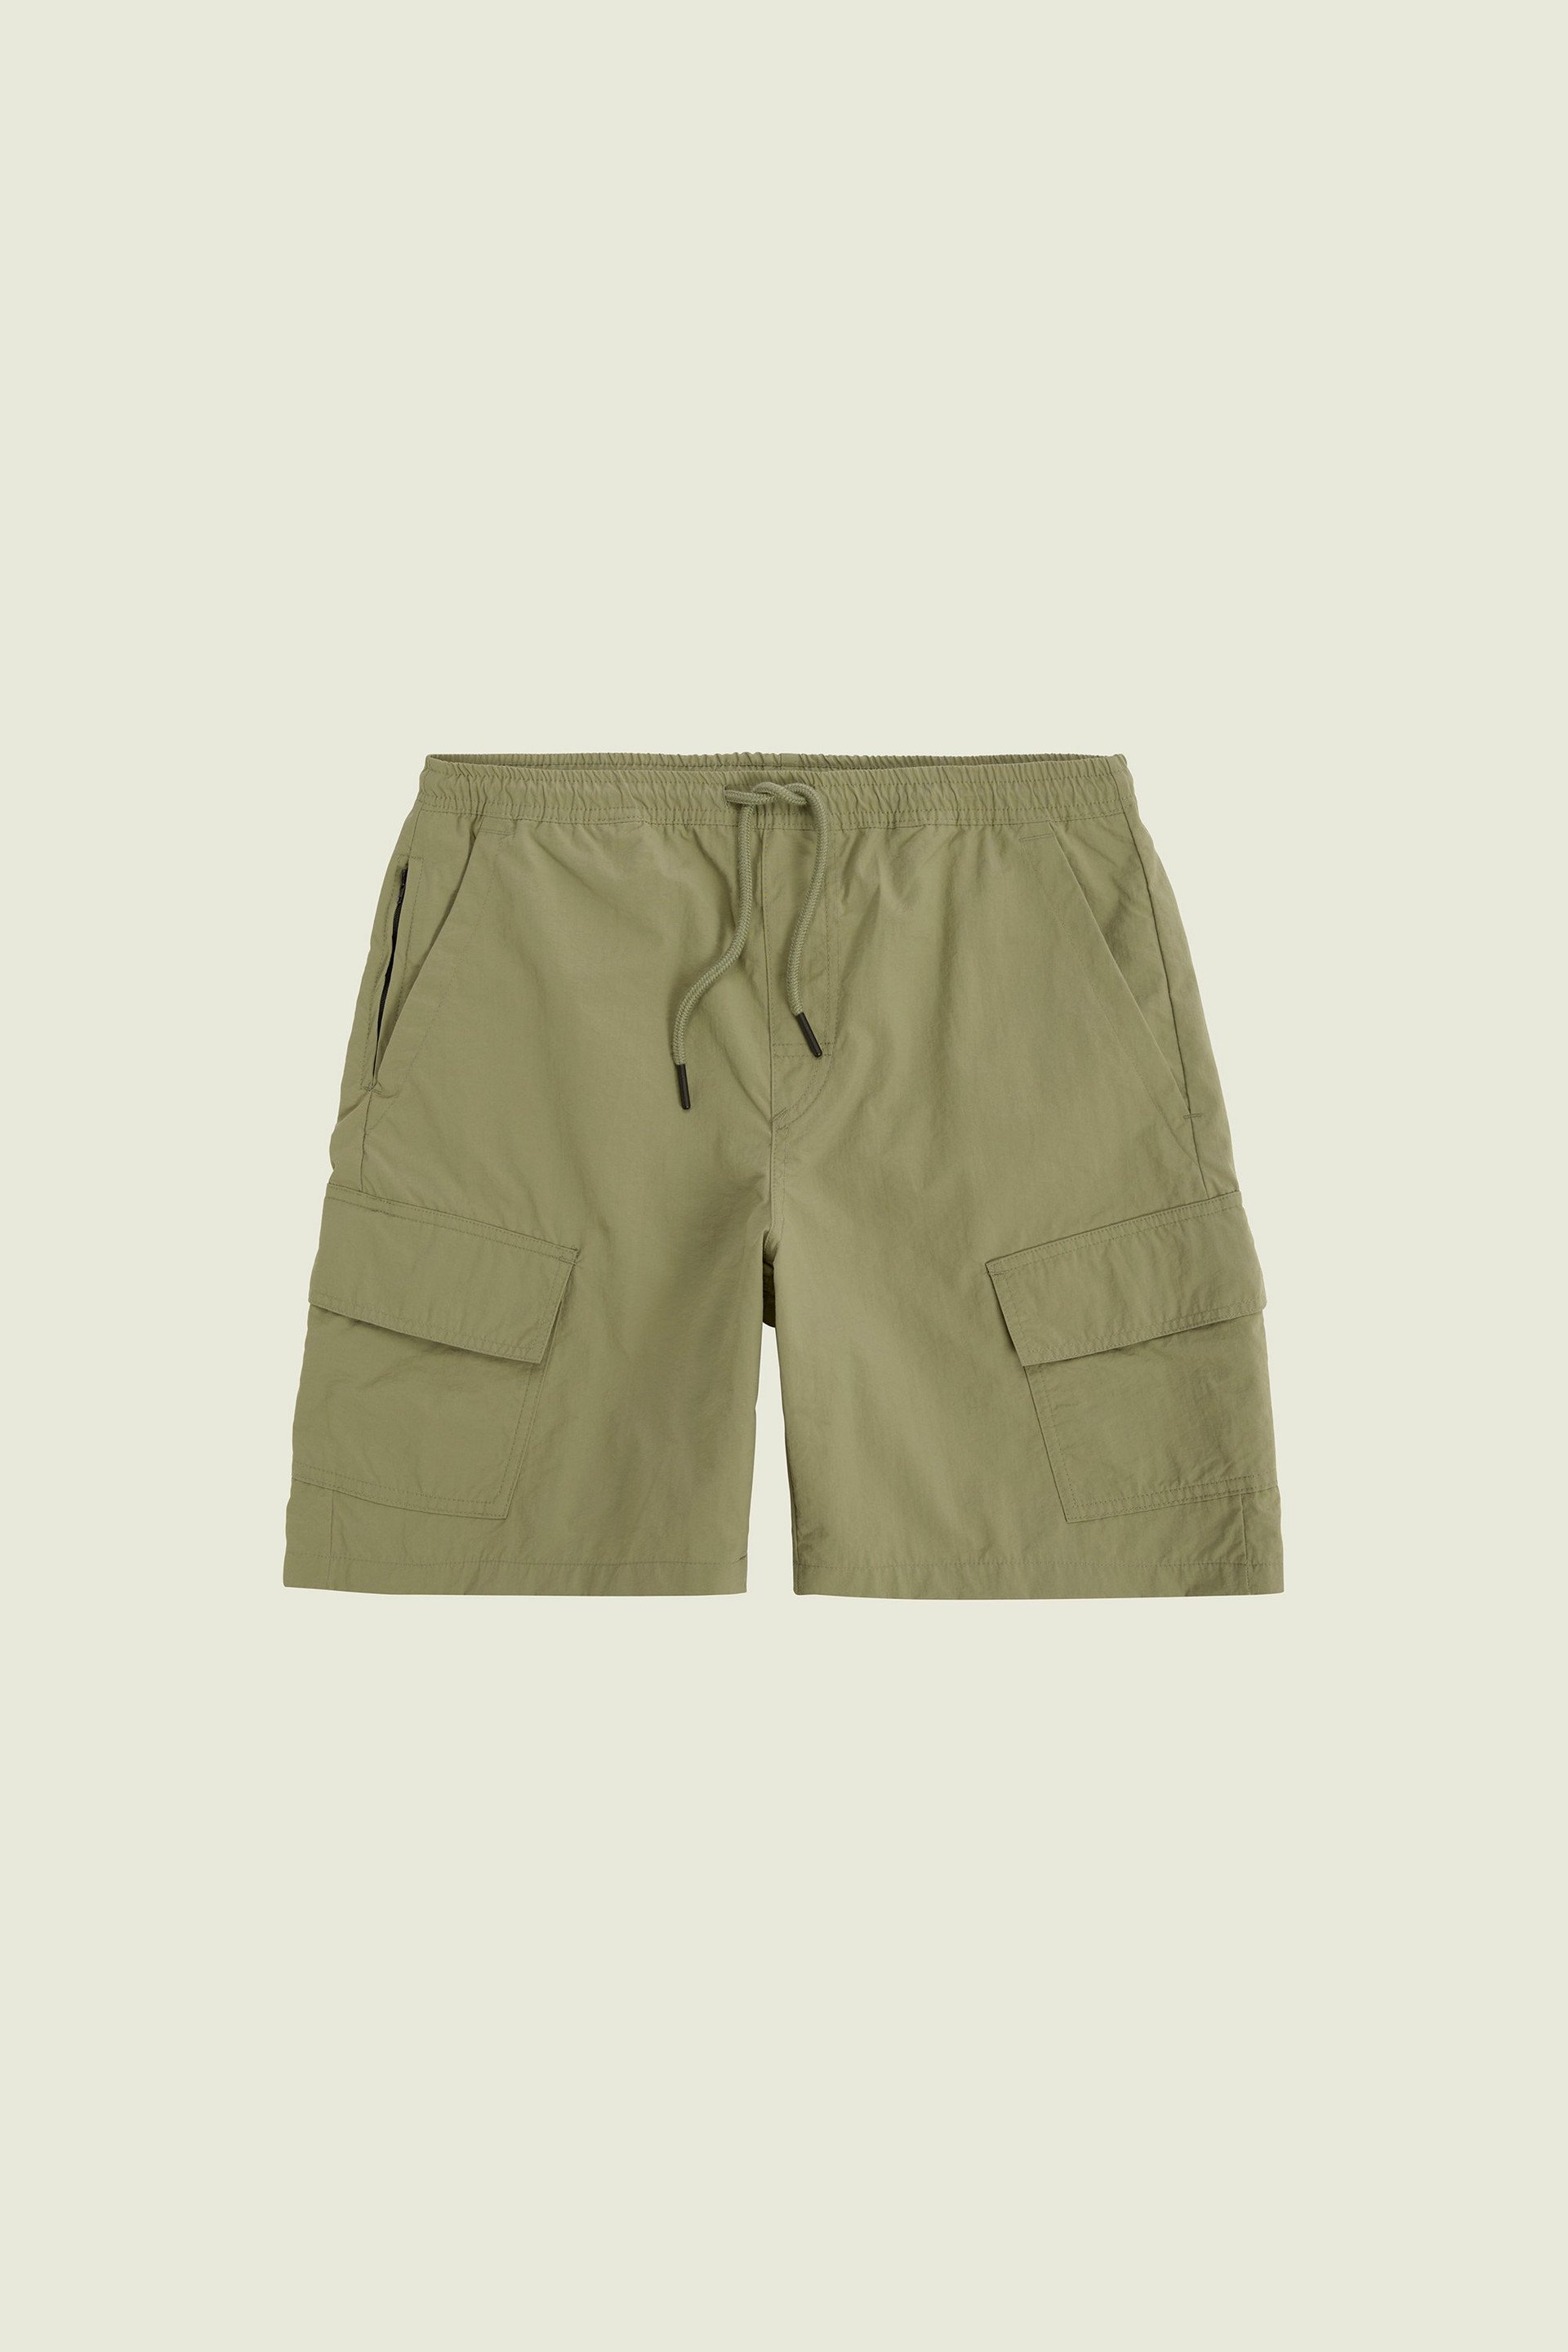 Pantalones cortos de hombre - Comprar online